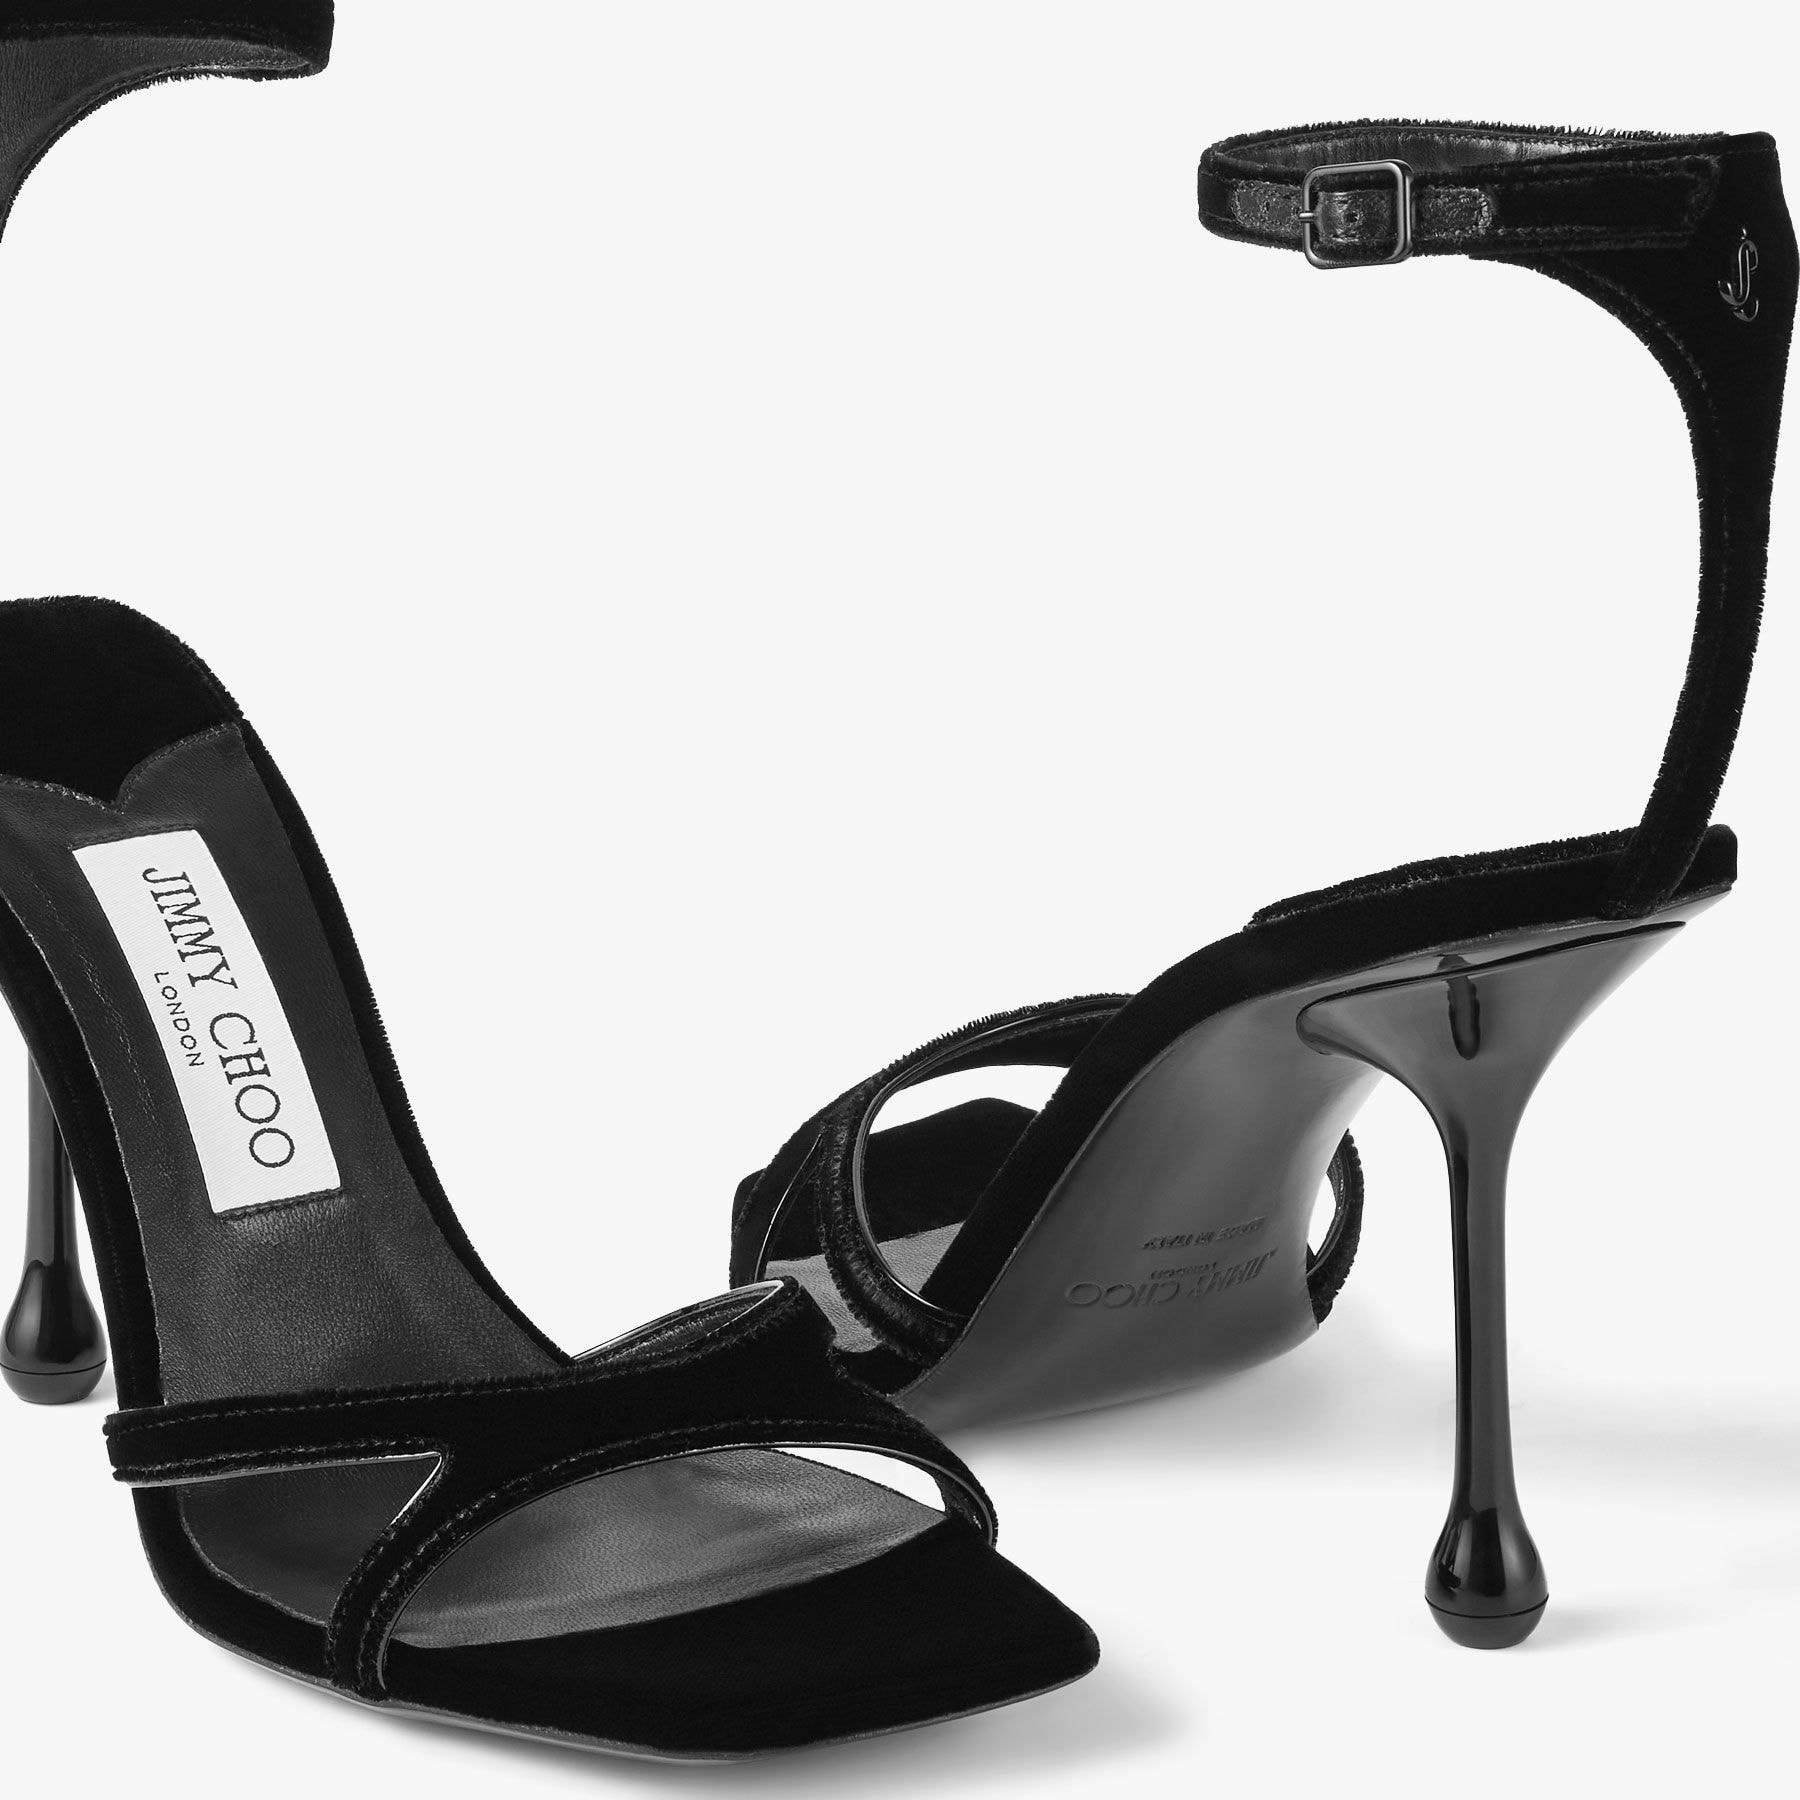 Ixia Sandal 95
Black Velvet Sandals - 4